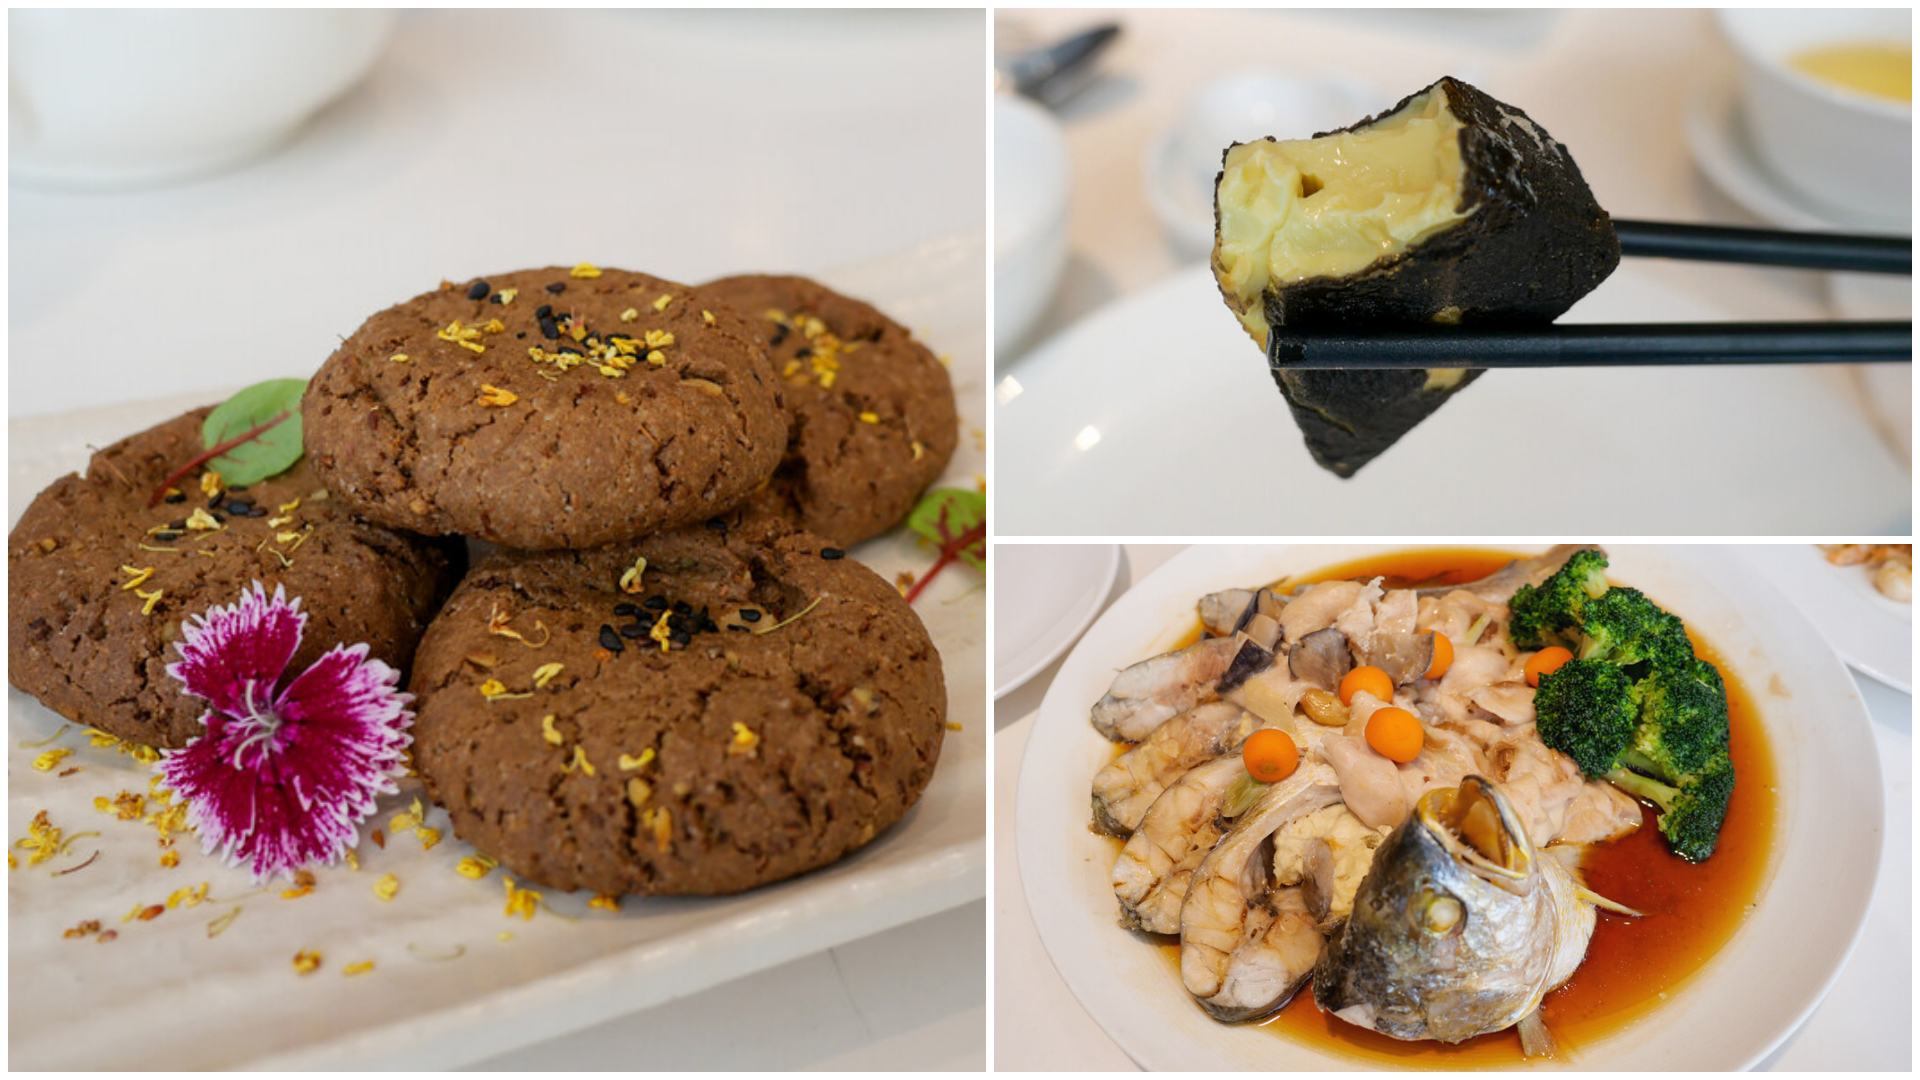 香港美食,香港自由行,干炒牛河,何洪記粥麵專家,米其林餐廳 @TISS玩味食尚